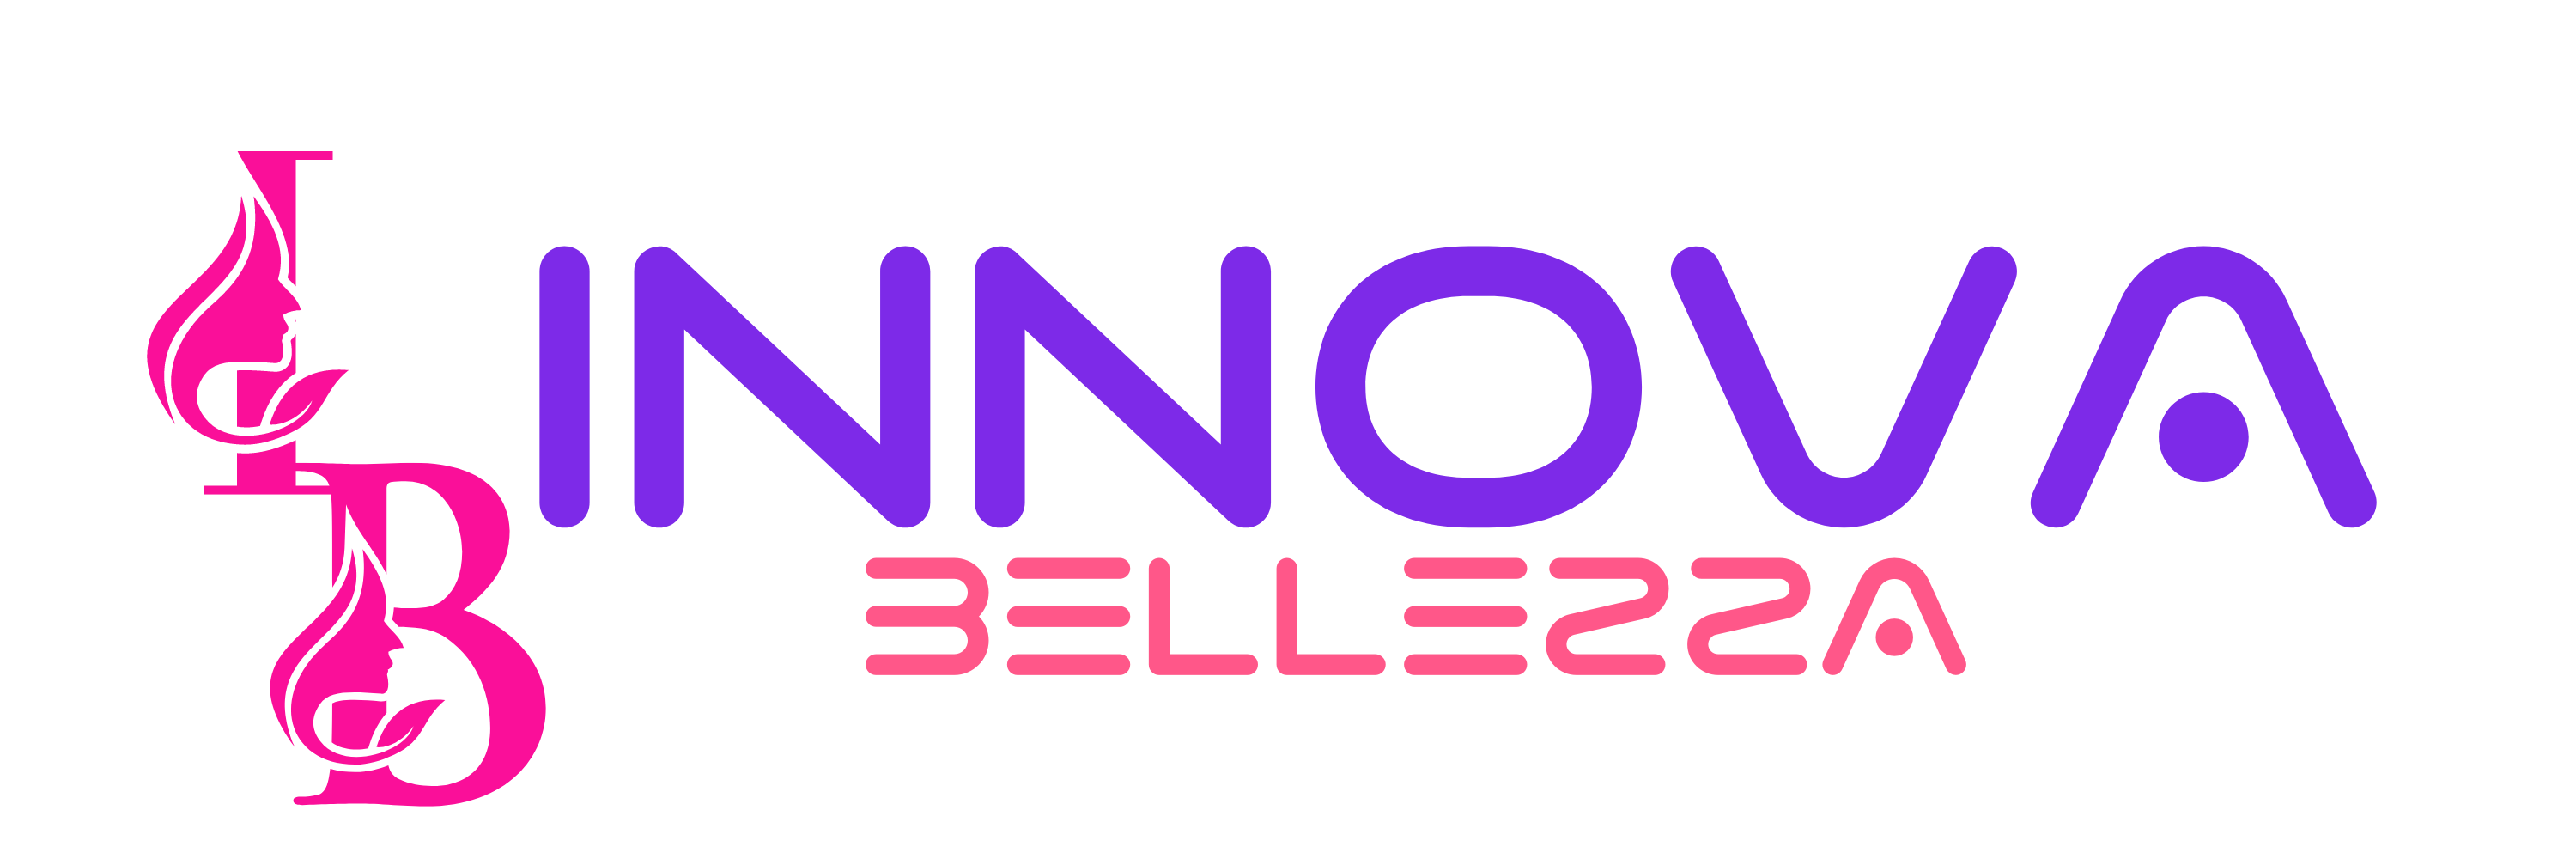 Innovabellezza@gmail.com